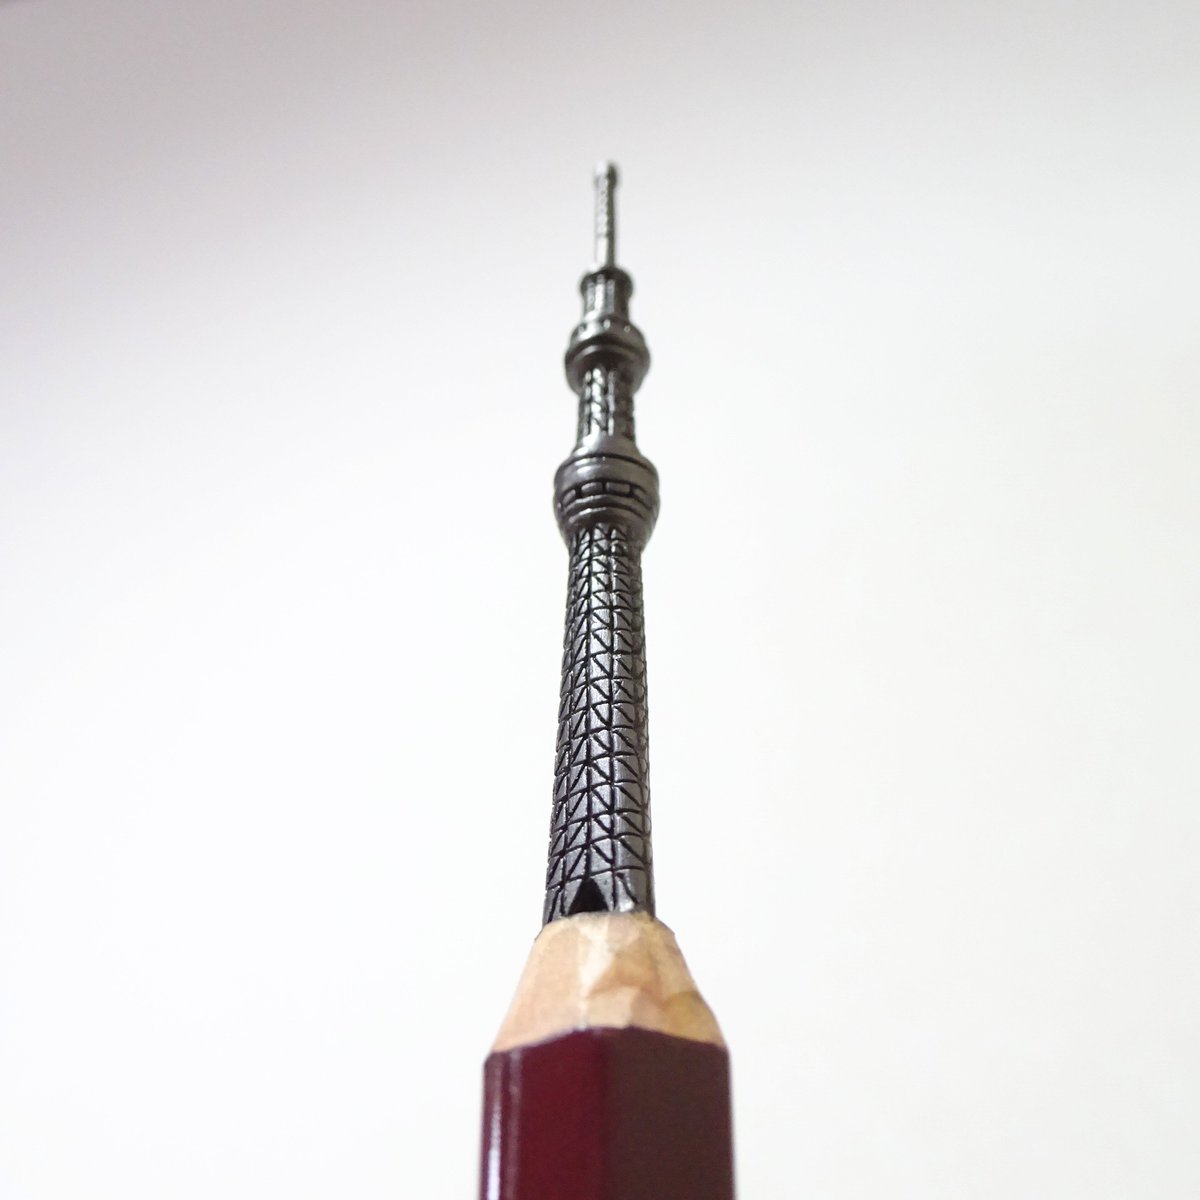 シロイ 鉛筆彫刻人 新作完成 鉛筆の芯で東京スカイツリーを作りました